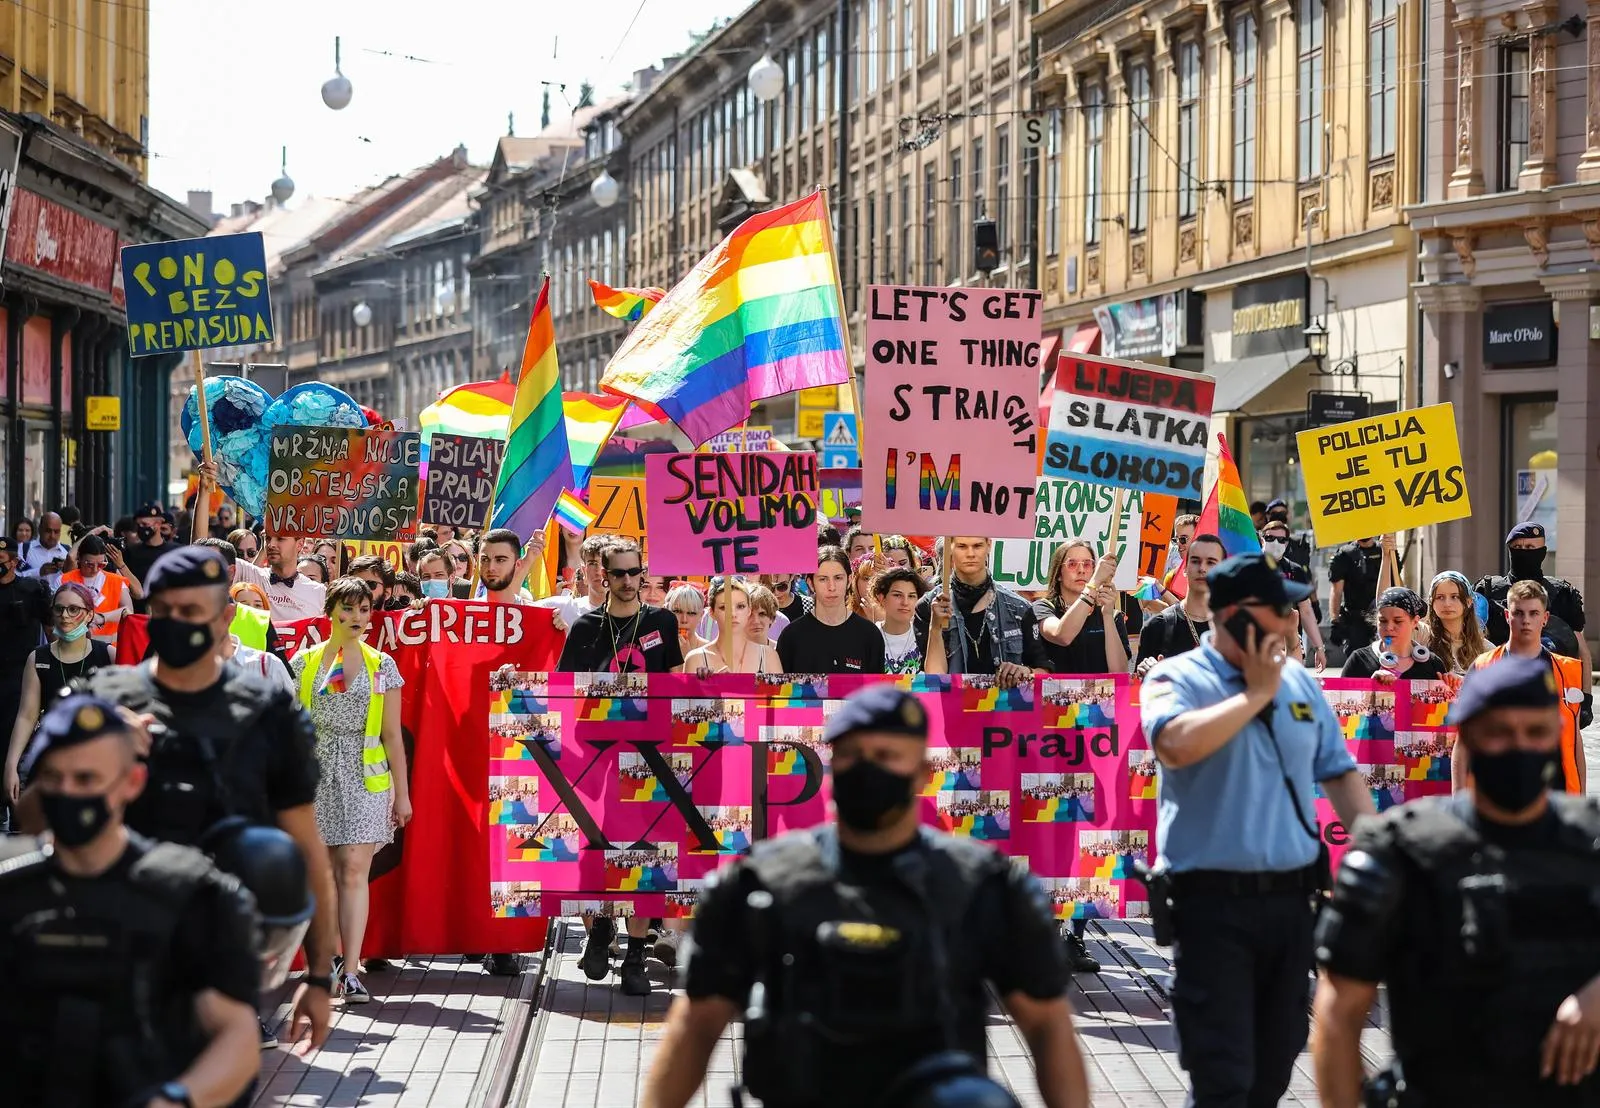 Zagreb Pride